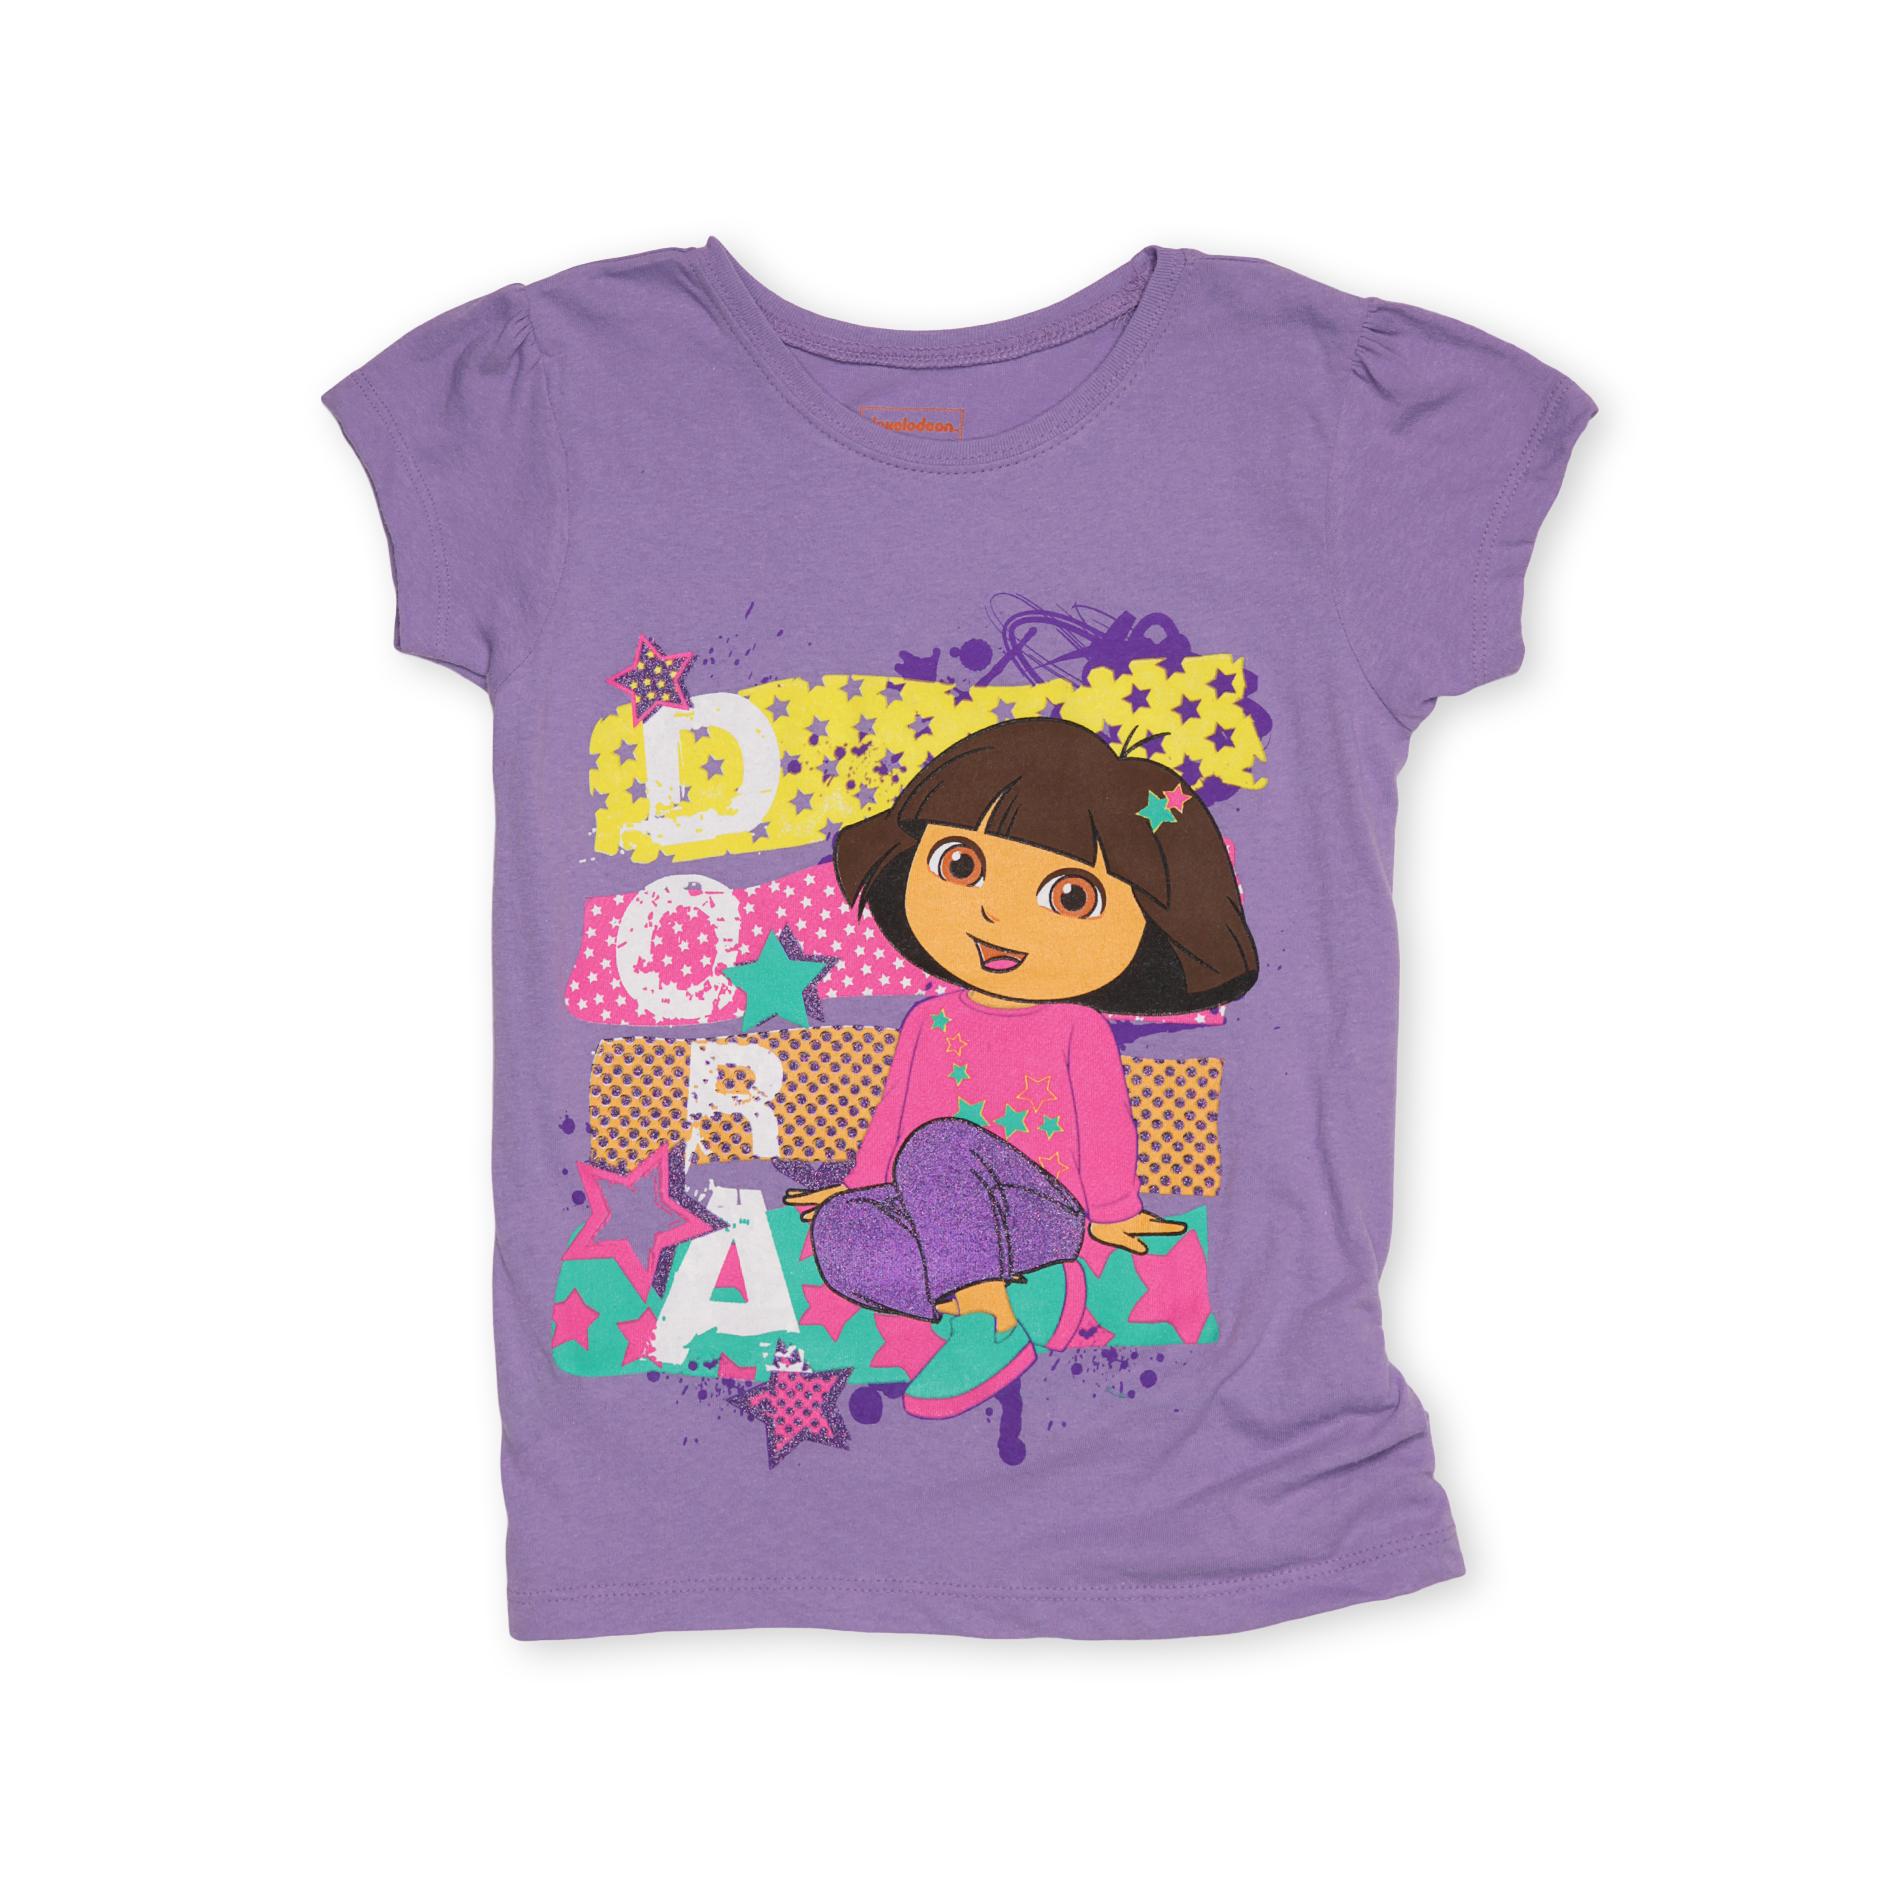 Nickelodeon Dora The Explorer Girl's Graphic T-Shirt